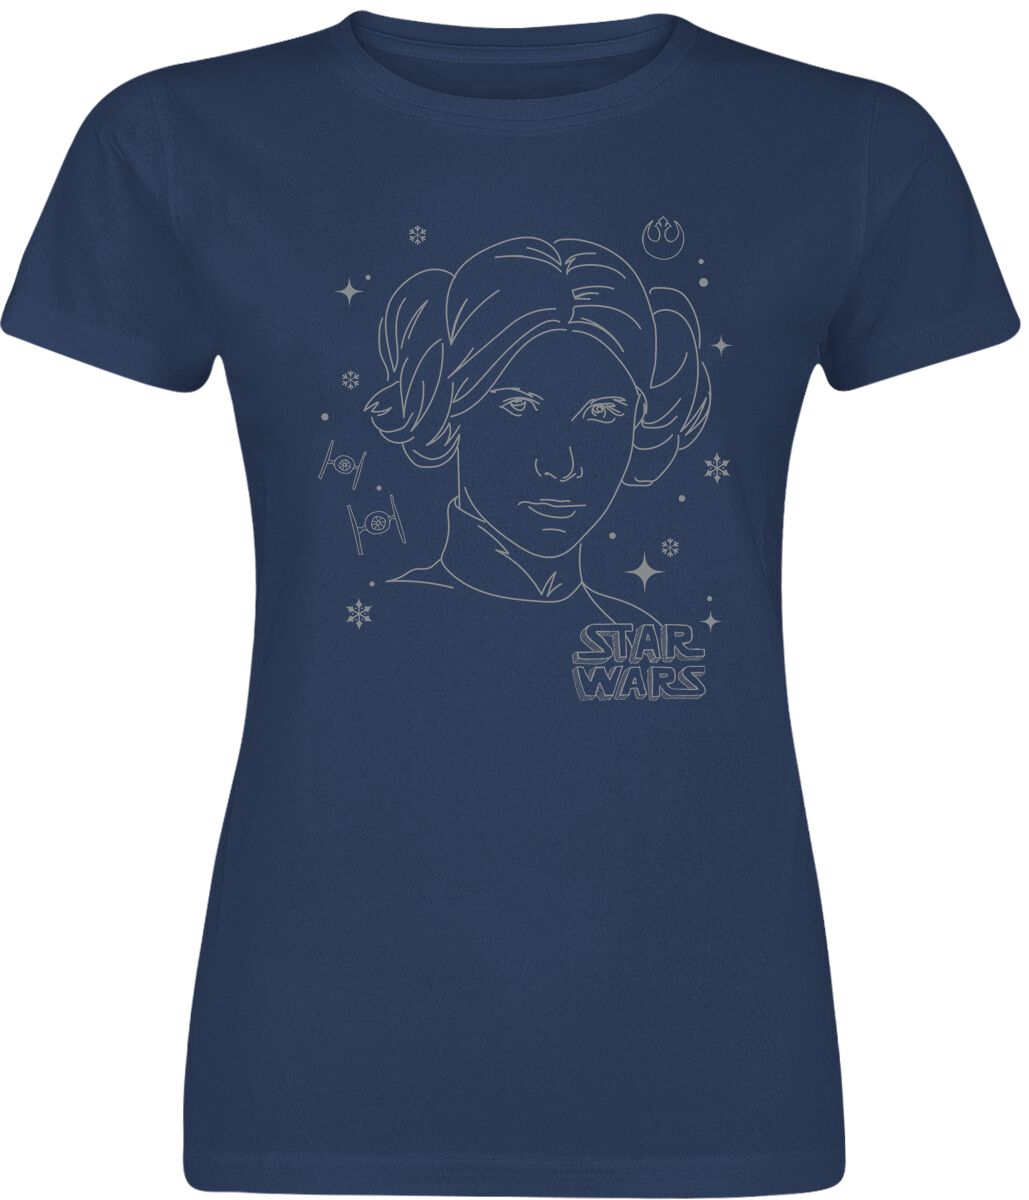 Star Wars Leia Christmas sketch T-Shirt blue